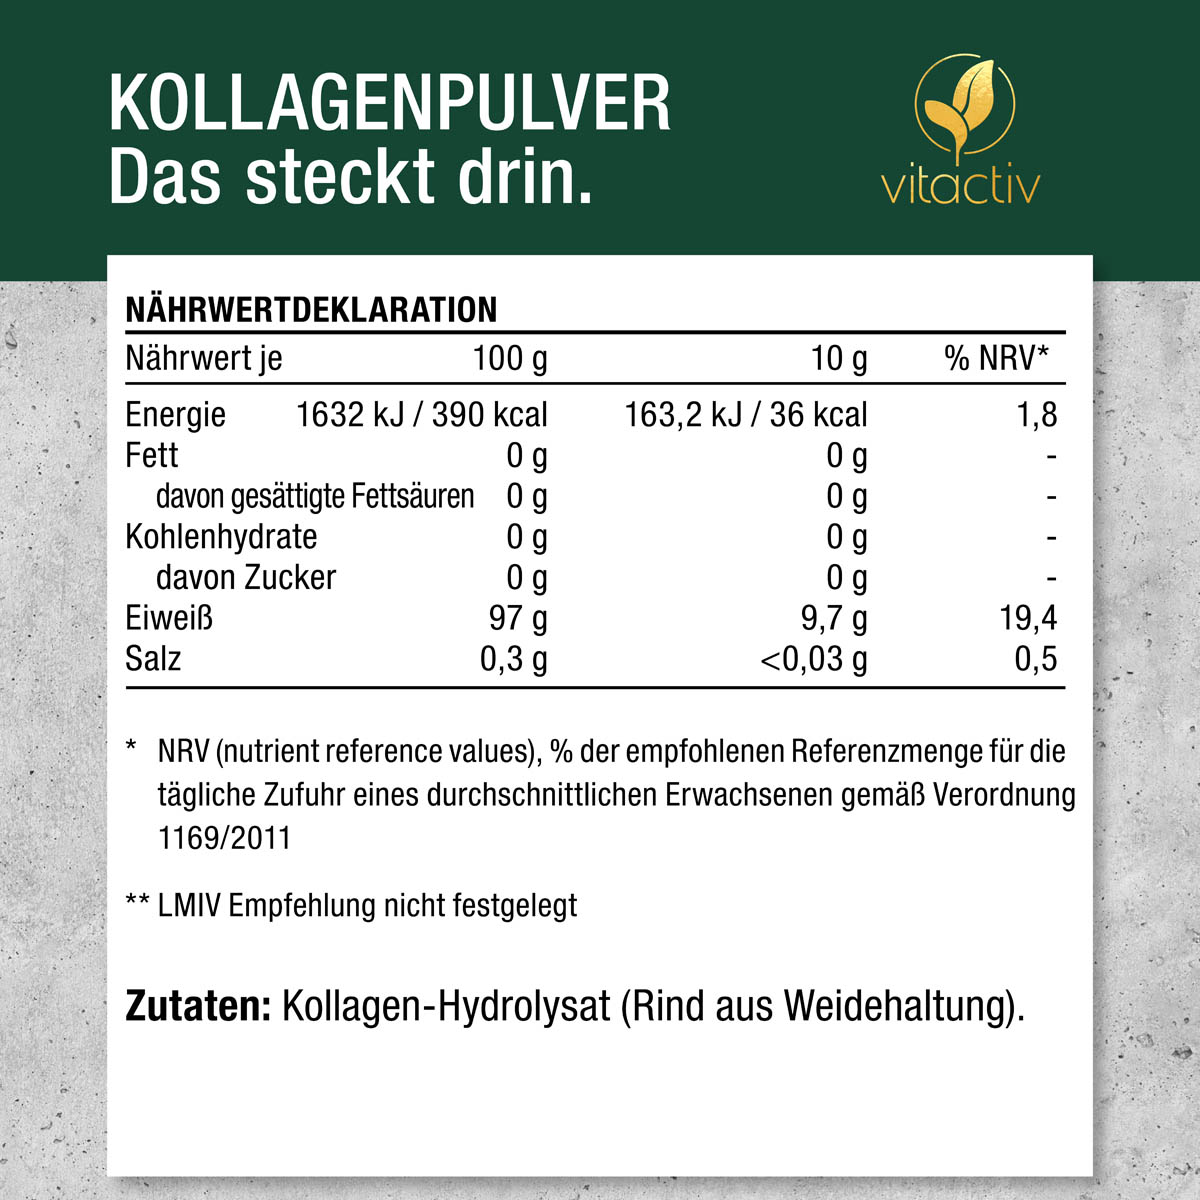 Zutaten für das Kollagen Pulver: Kollagen-Hydolysat (stammt vom Rind aus Weisehaltung).